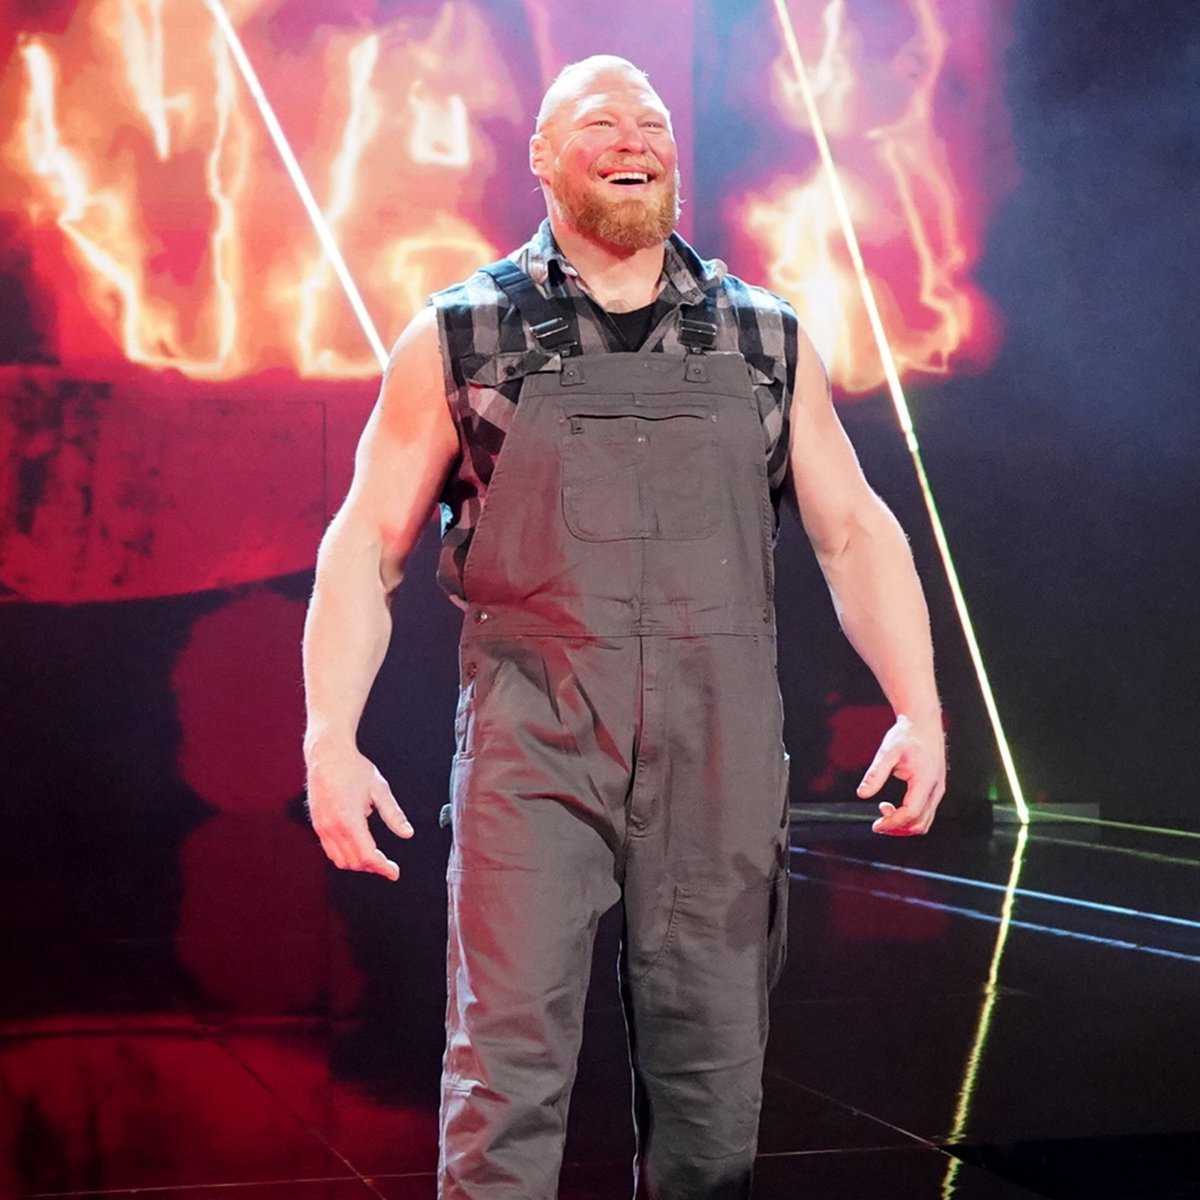 Nouveau champion NXT Bron Breakker : "Brock Lesnar est l'homme"